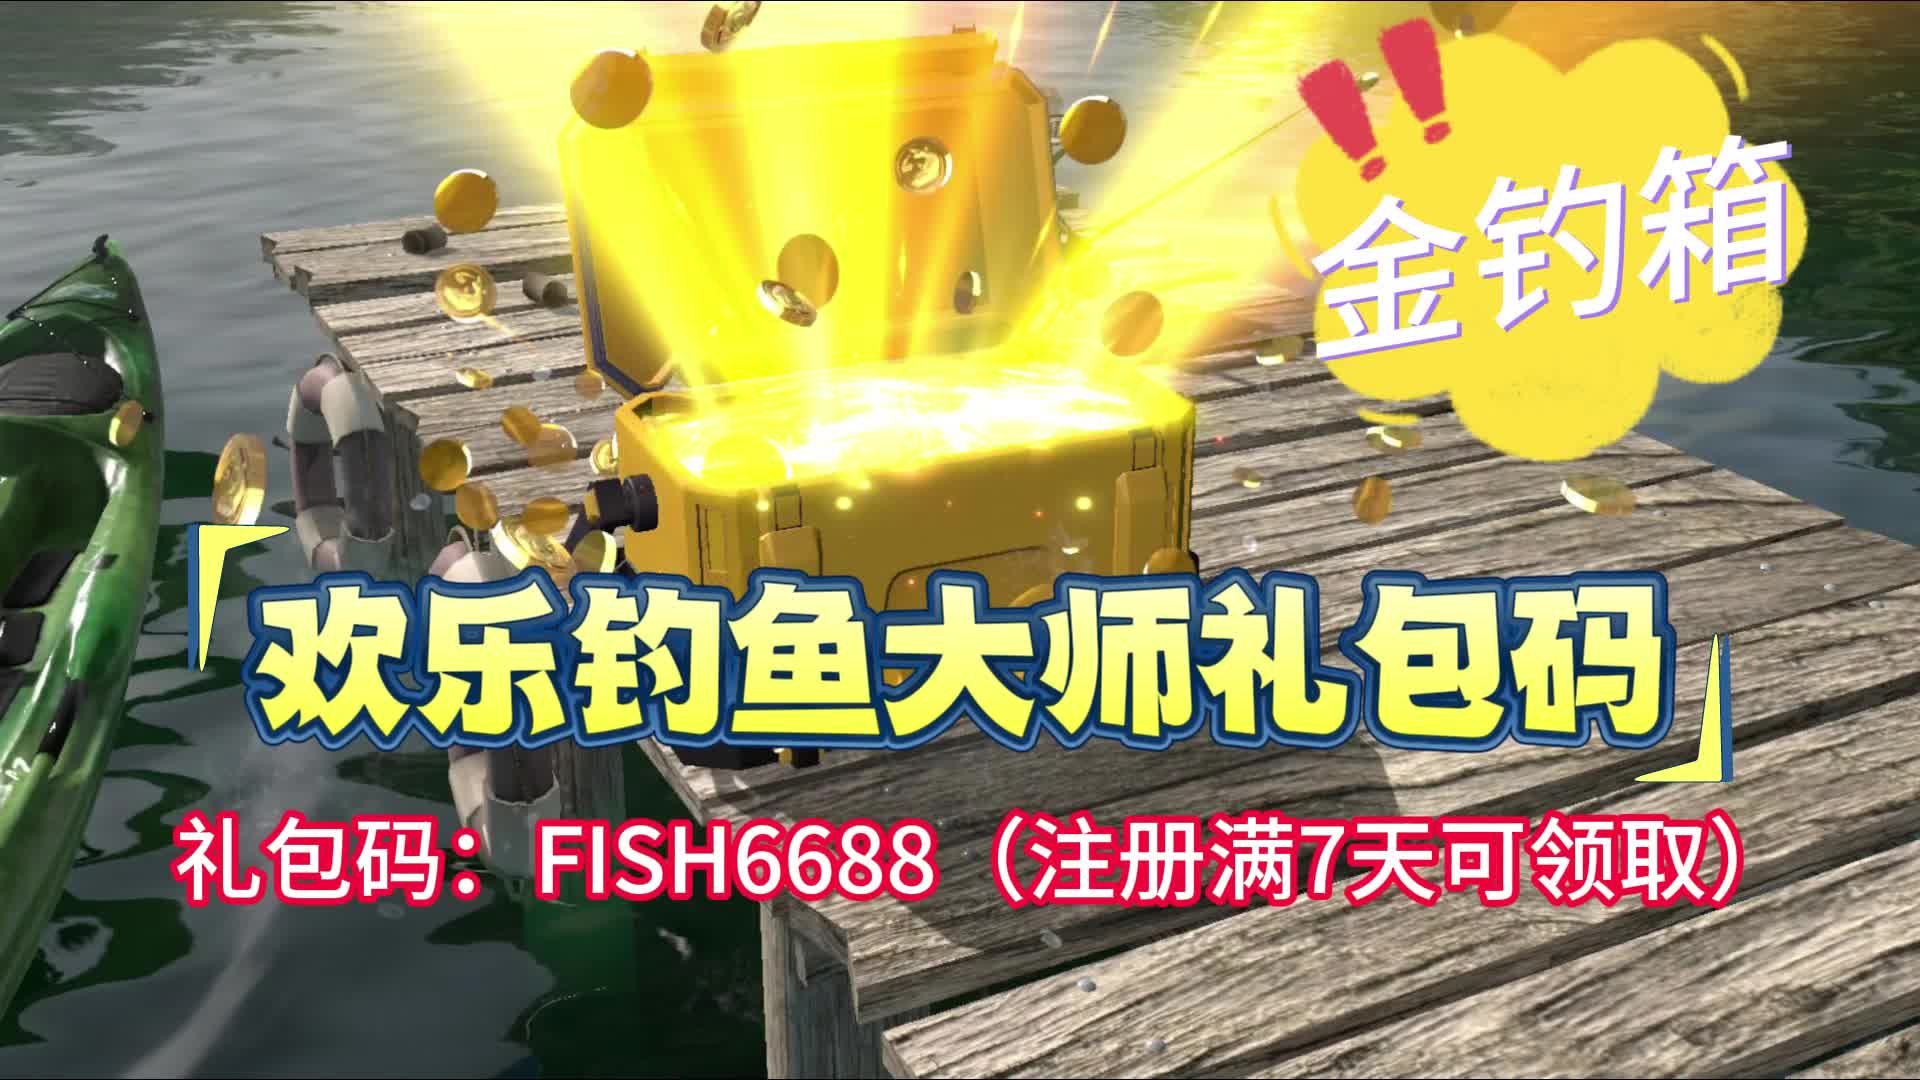 【7723游戏盒】欢乐钓鱼大师今日礼包码，兑换金钓箱！！！